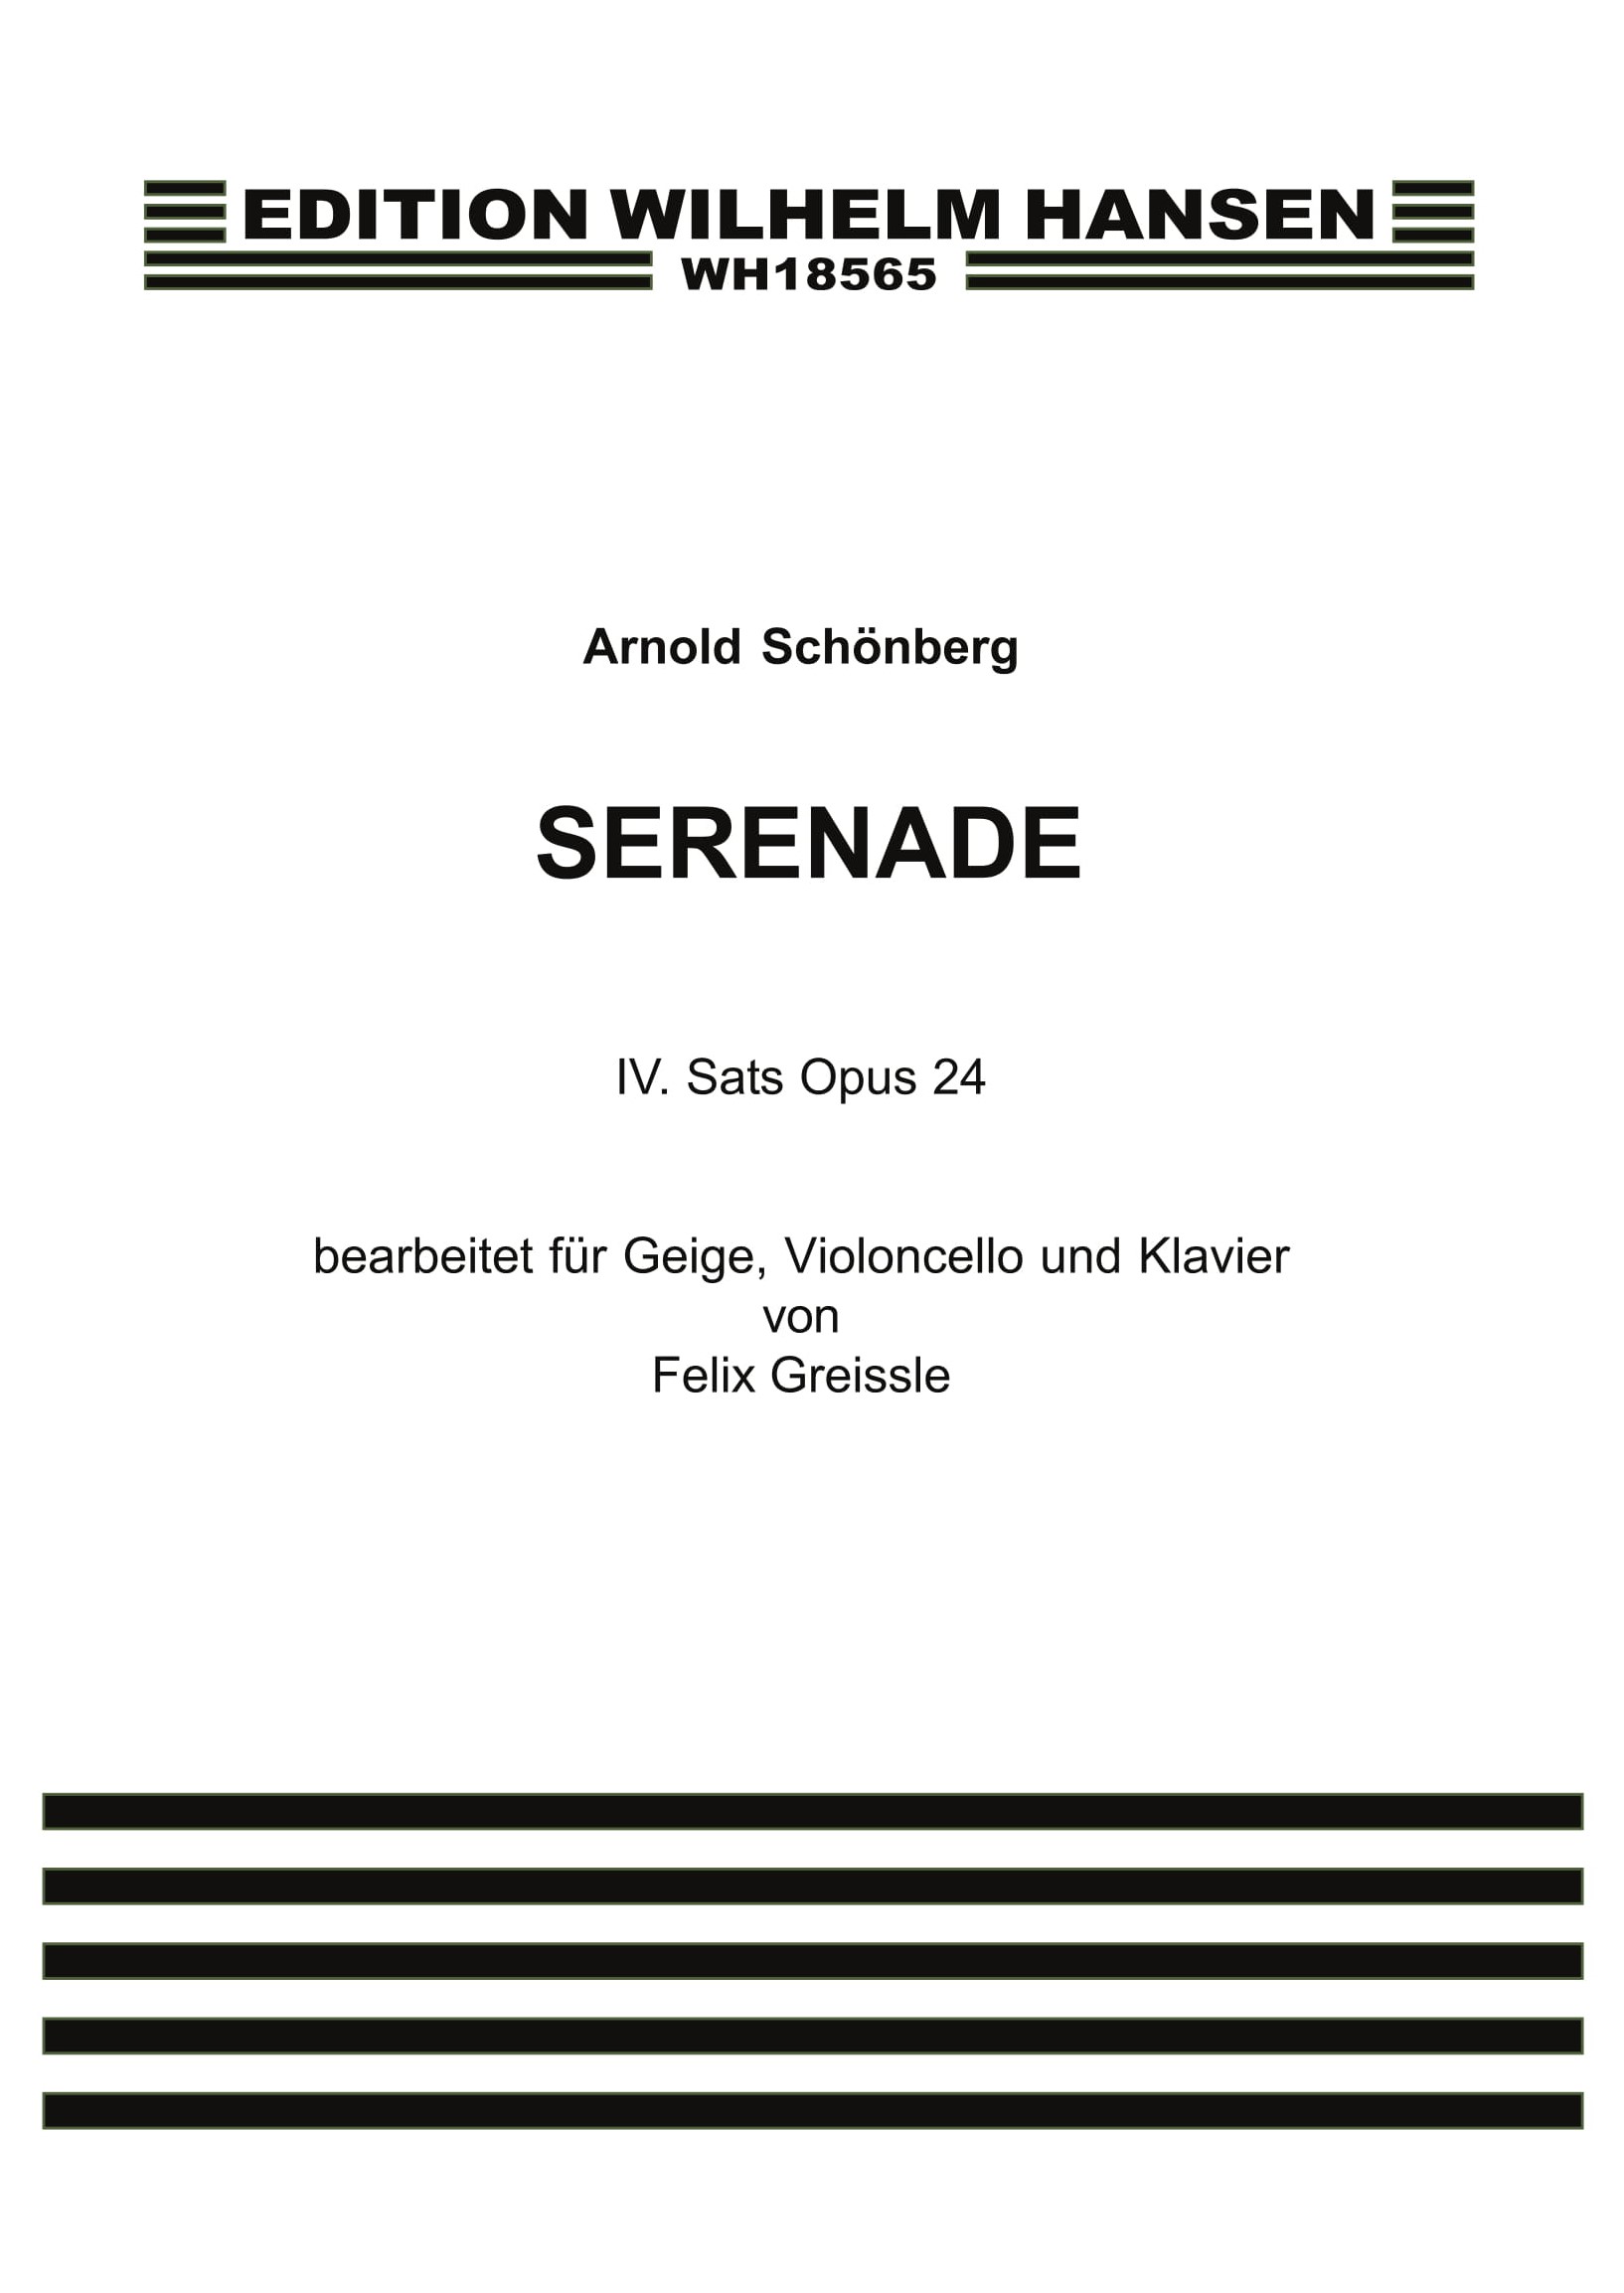 Arnold Schnberg: Serenade Op. 24: Piano Trio: Score and Parts